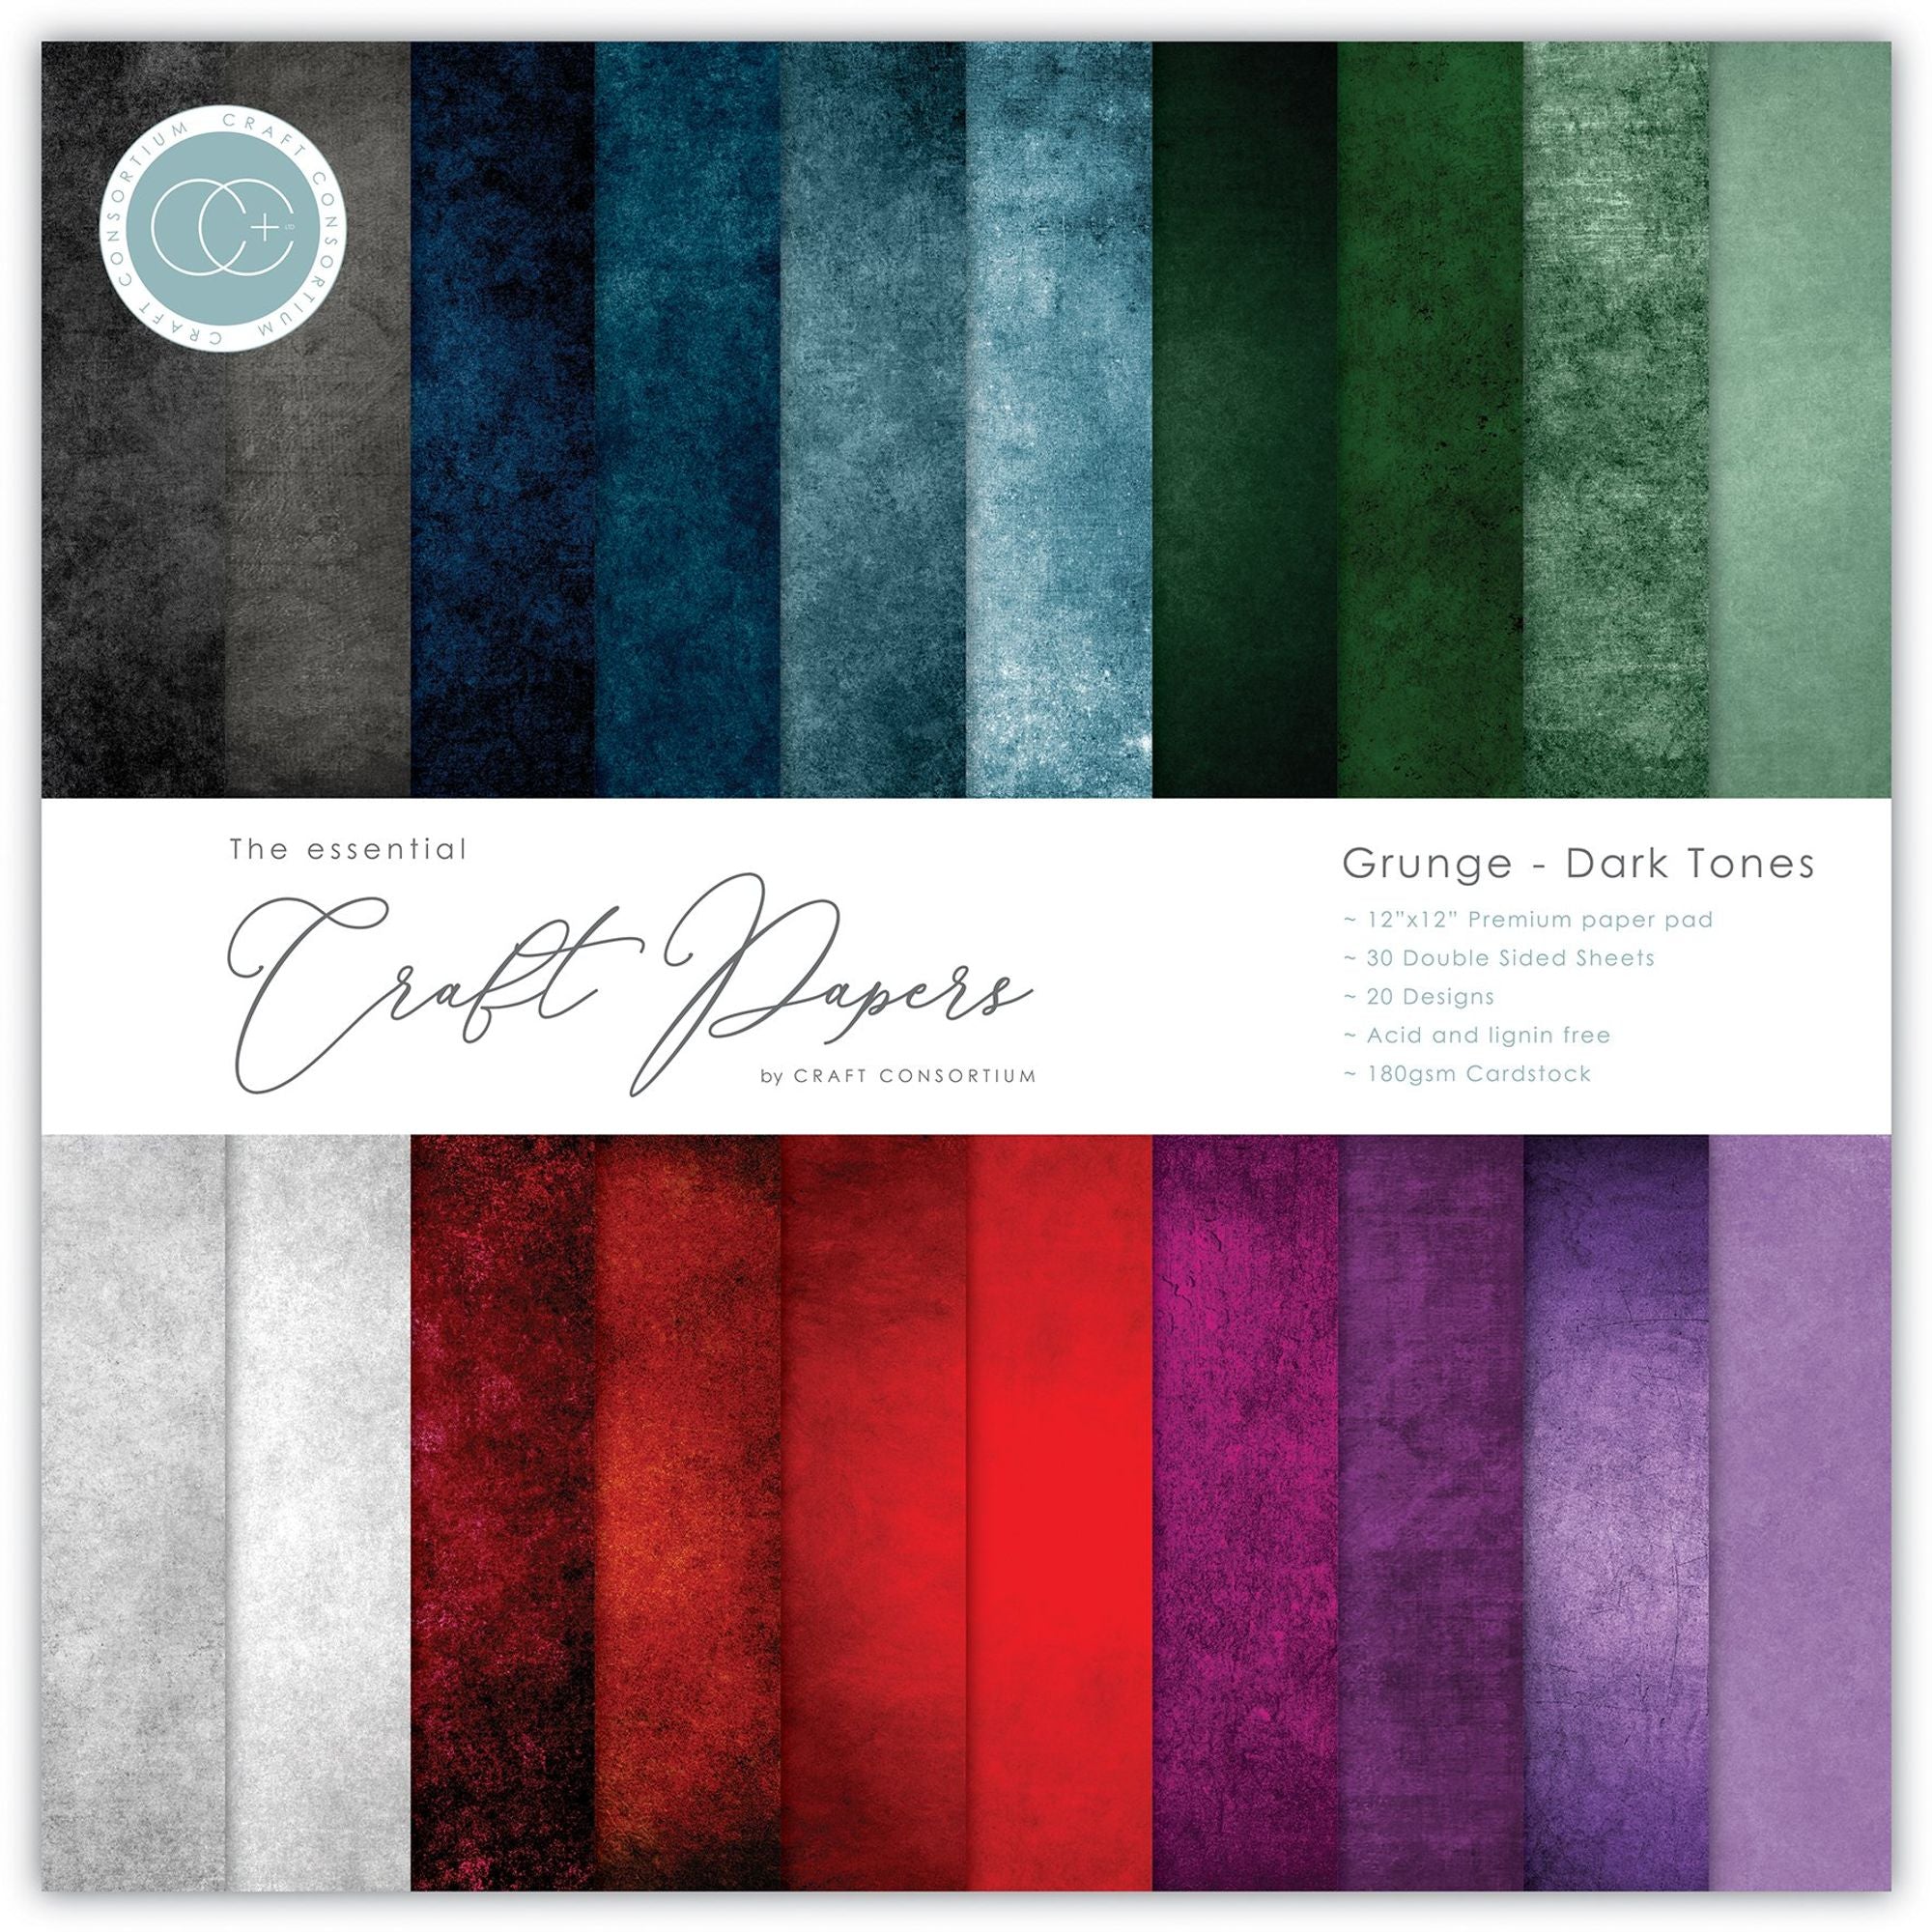 Grunge - Dark Tones 12x12 Premium Paper Pad